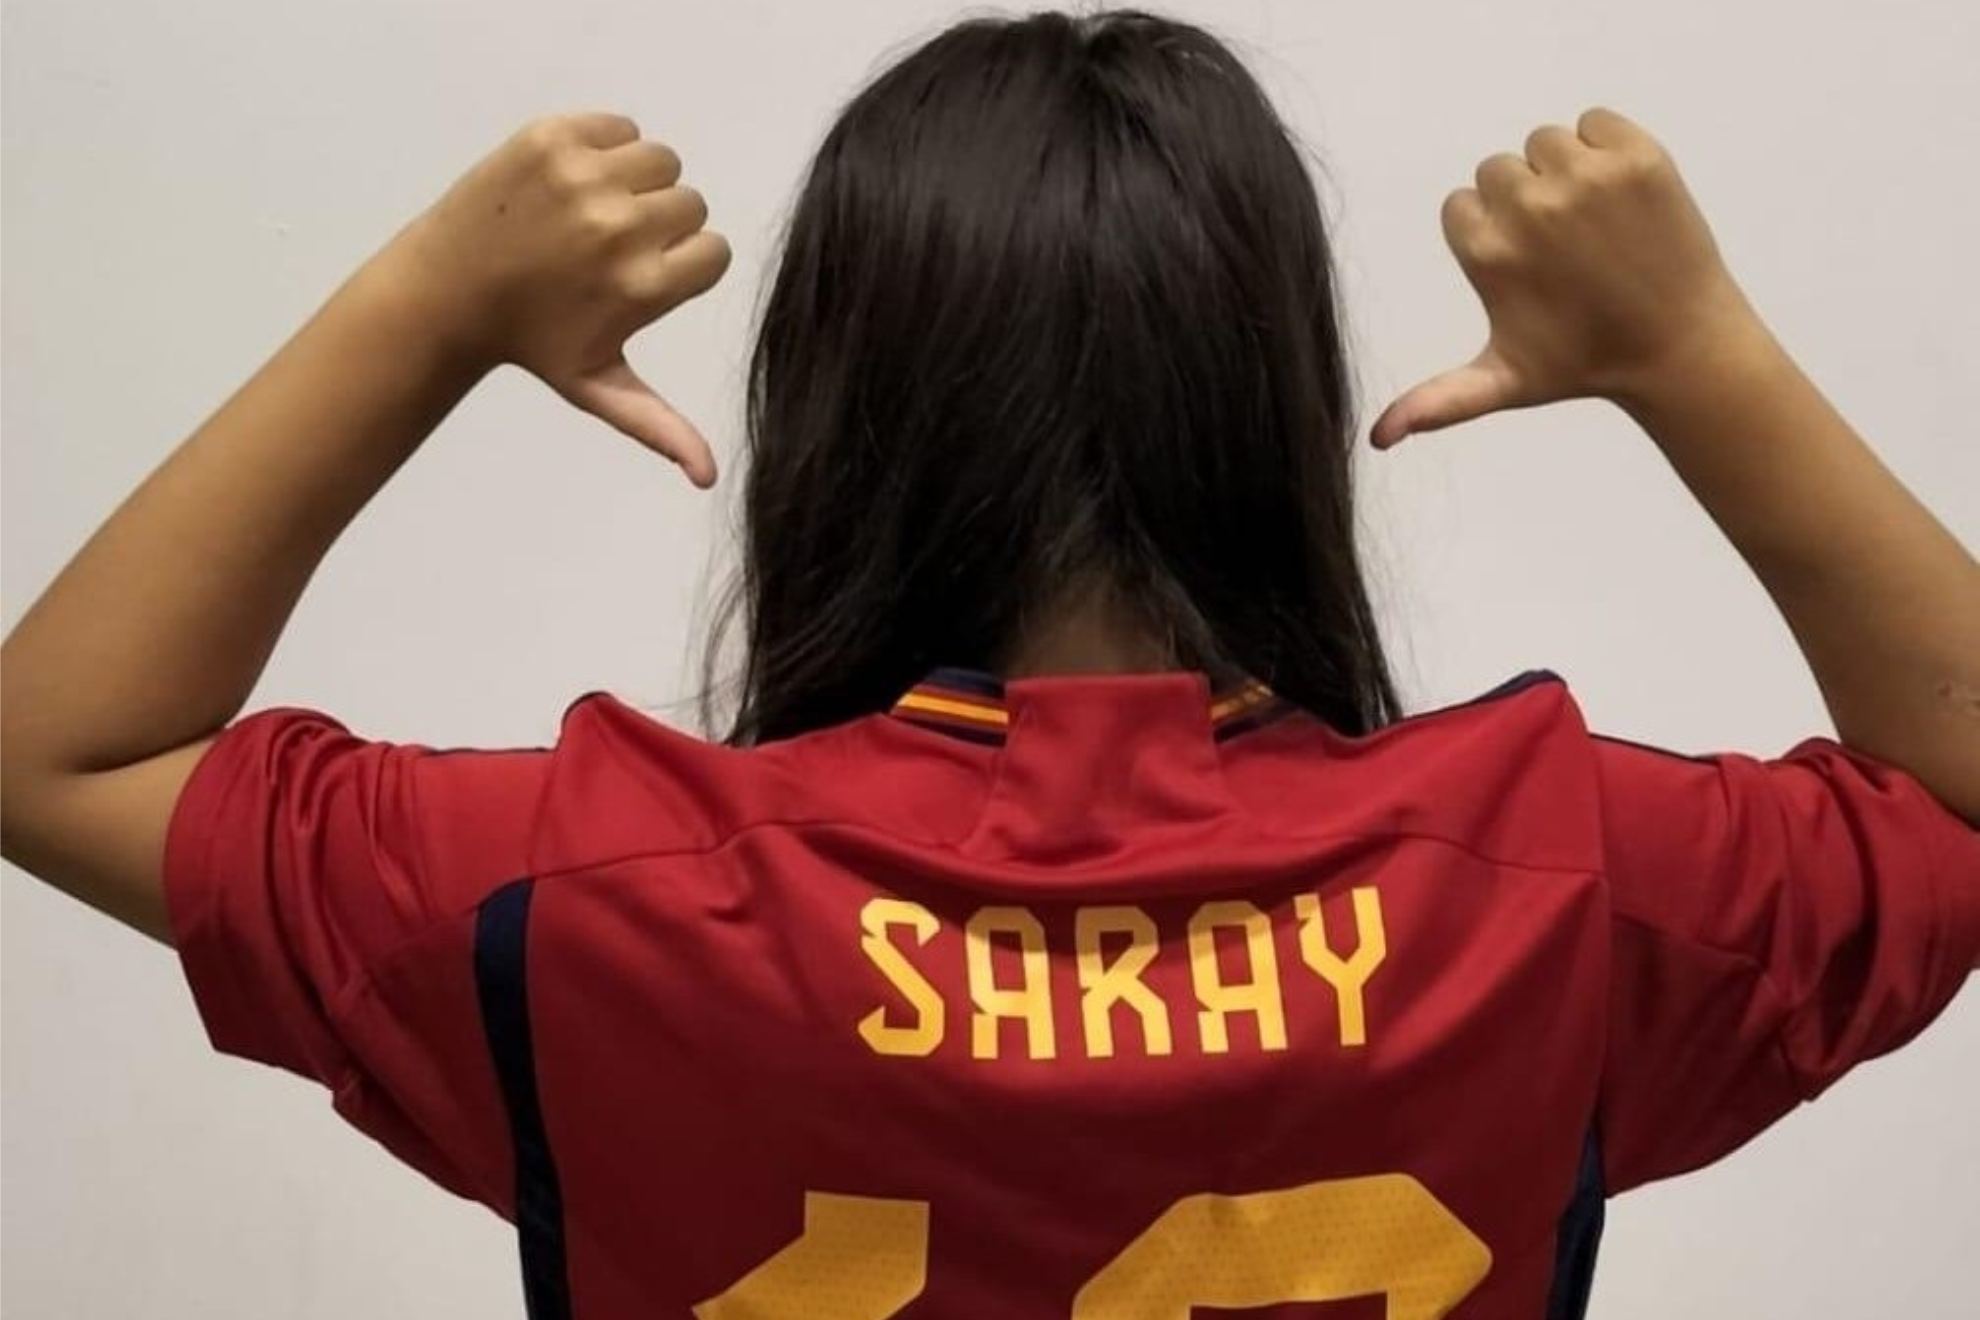 La Selección española apoya a Saray, la niña de 10 años que sufrió bullying